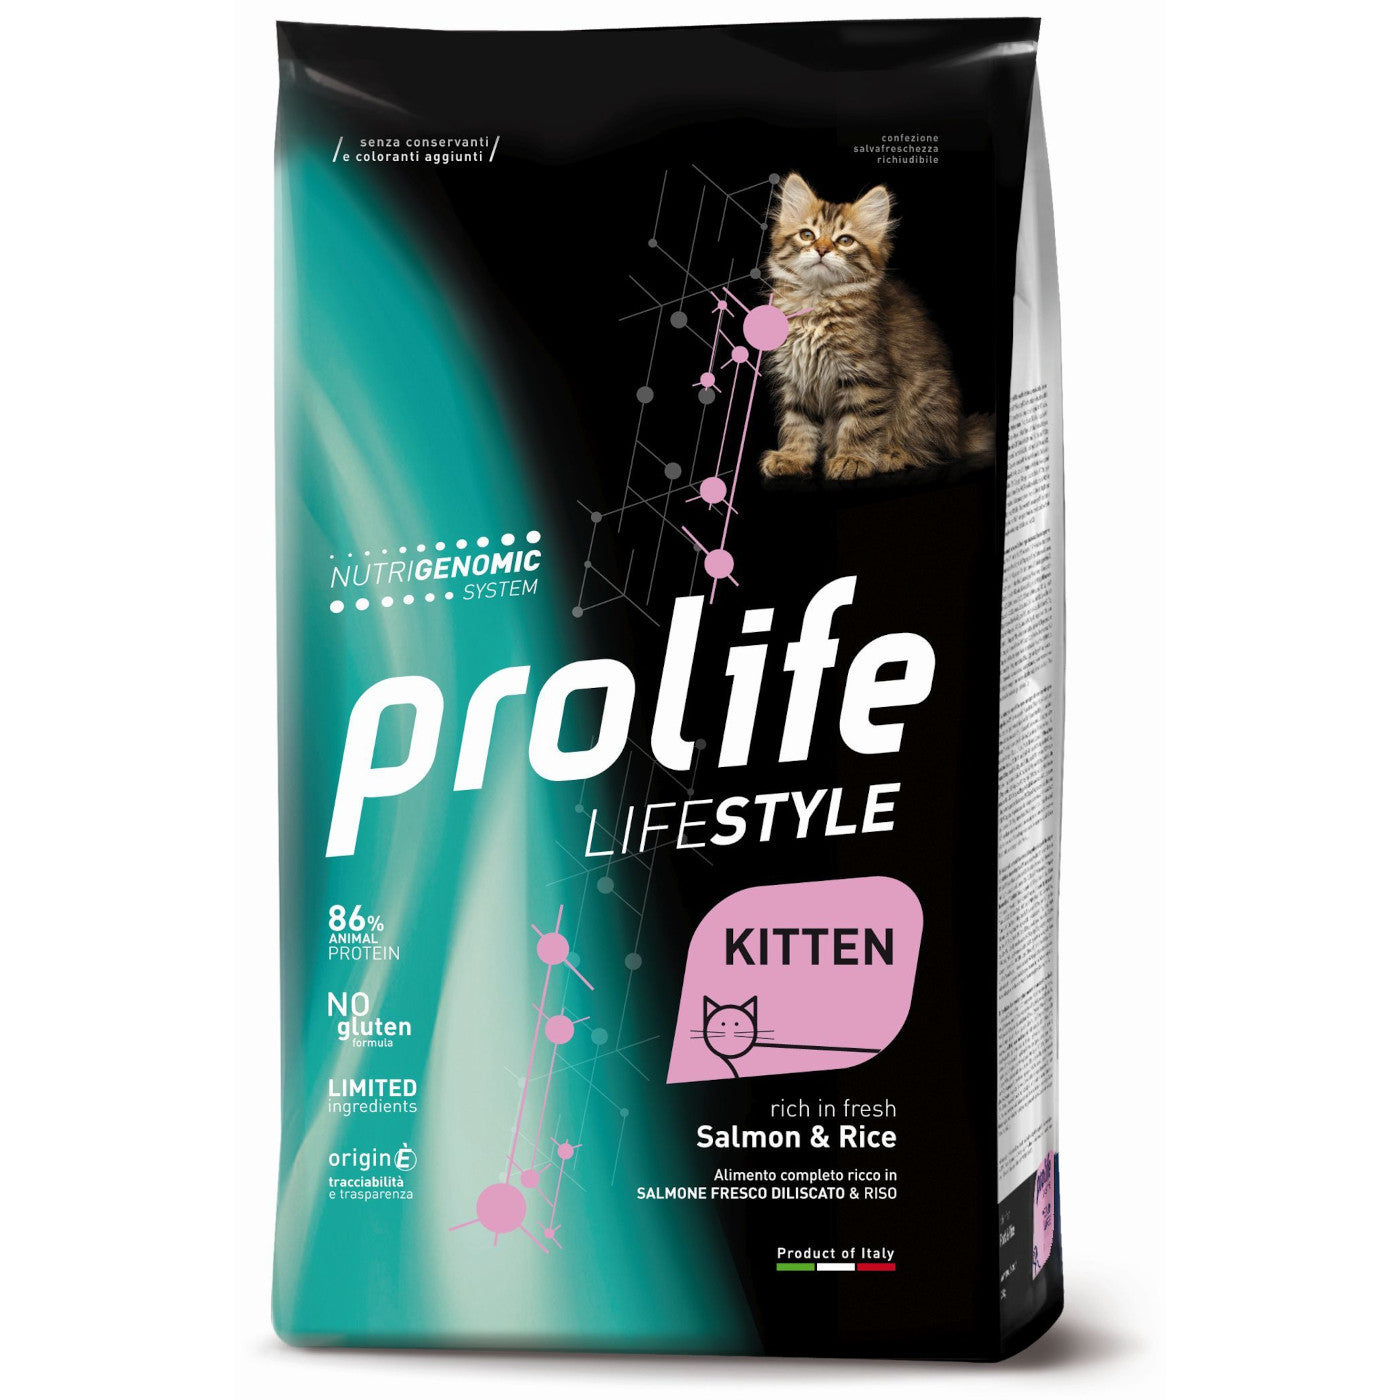 Prolife Lifestyle Kitten Salmone e Riso 400g - Cibo per Gattini